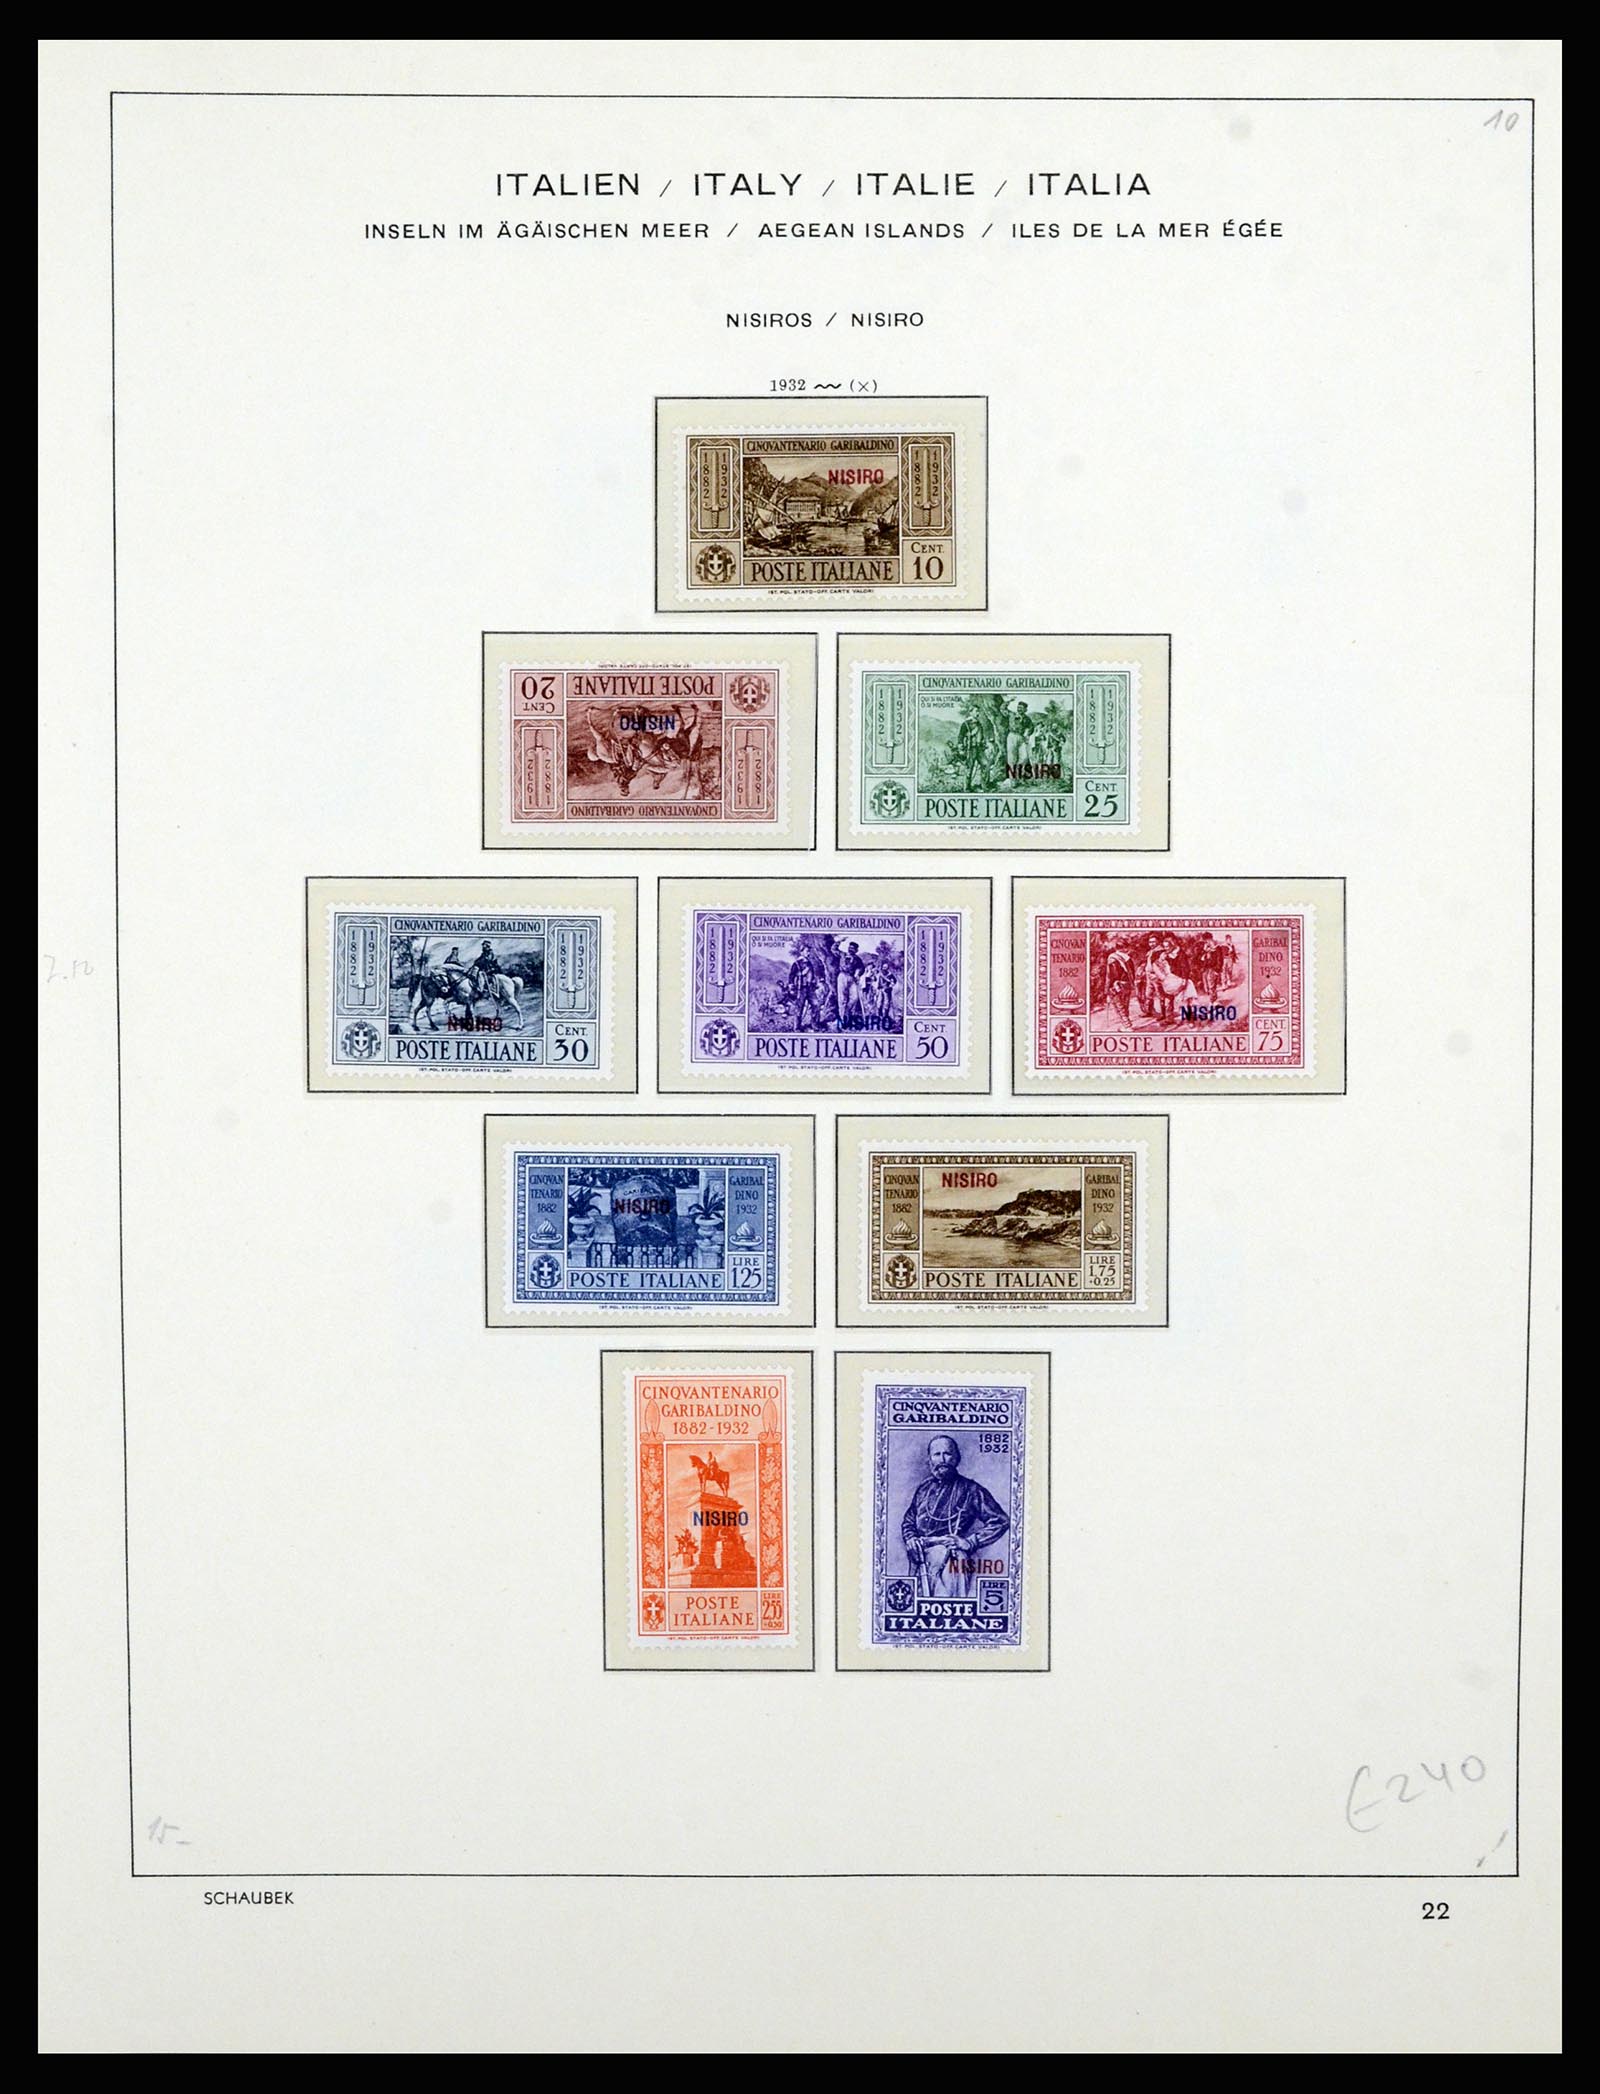 36577 048 - Stamp collection 36577 Italiaanse gebieden 1870-1940.